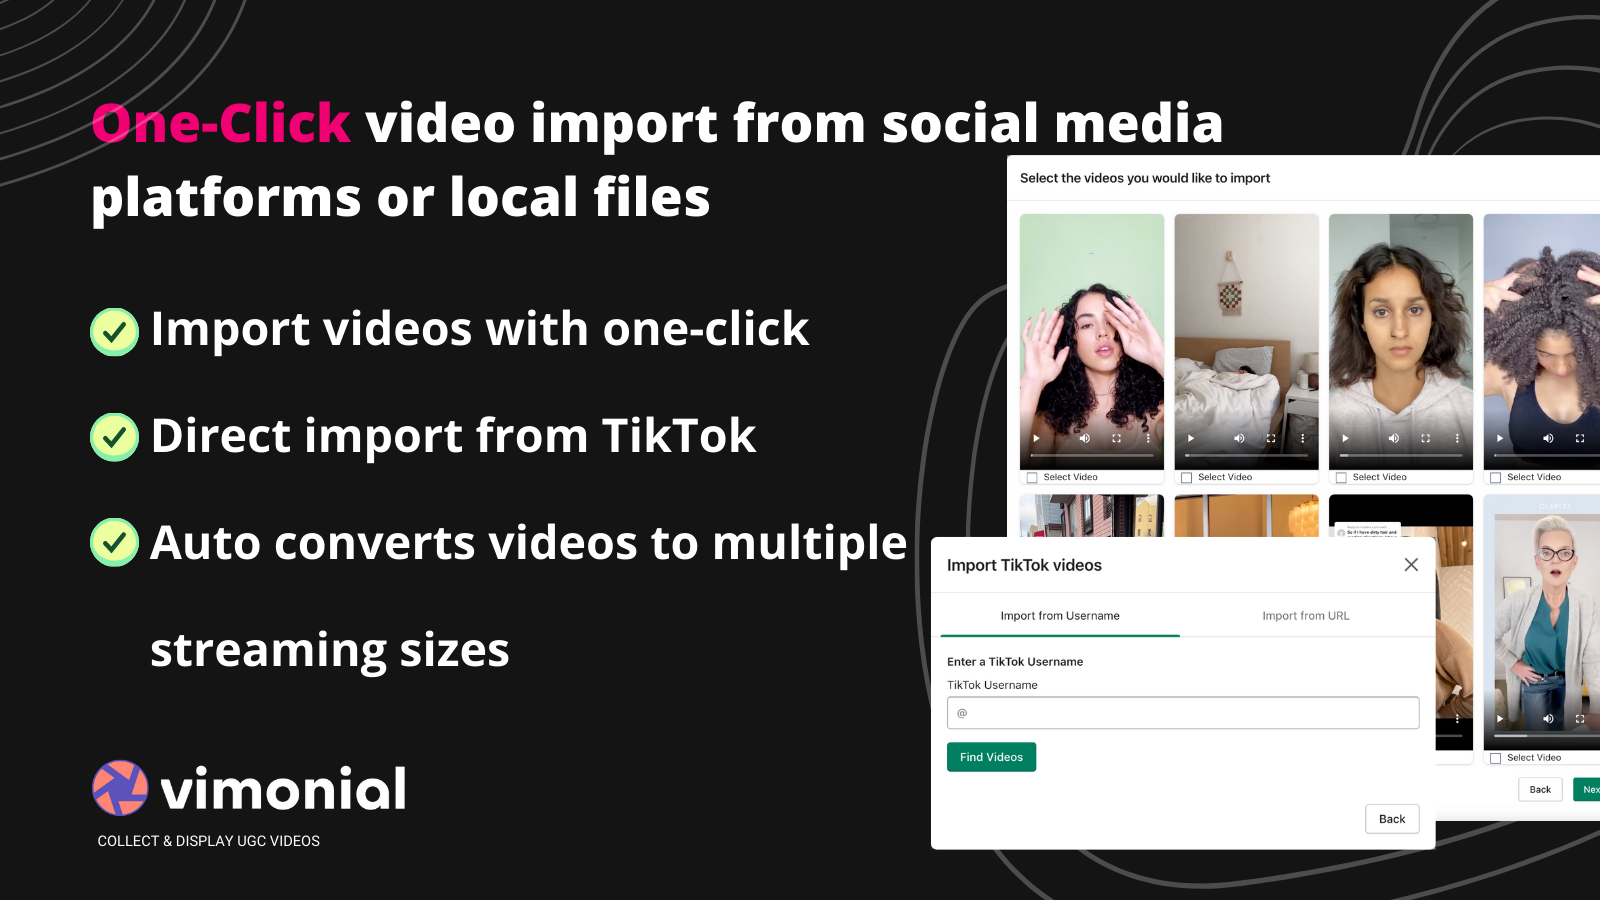 Importación de video con un solo clic desde plataformas sociales o archivos locales